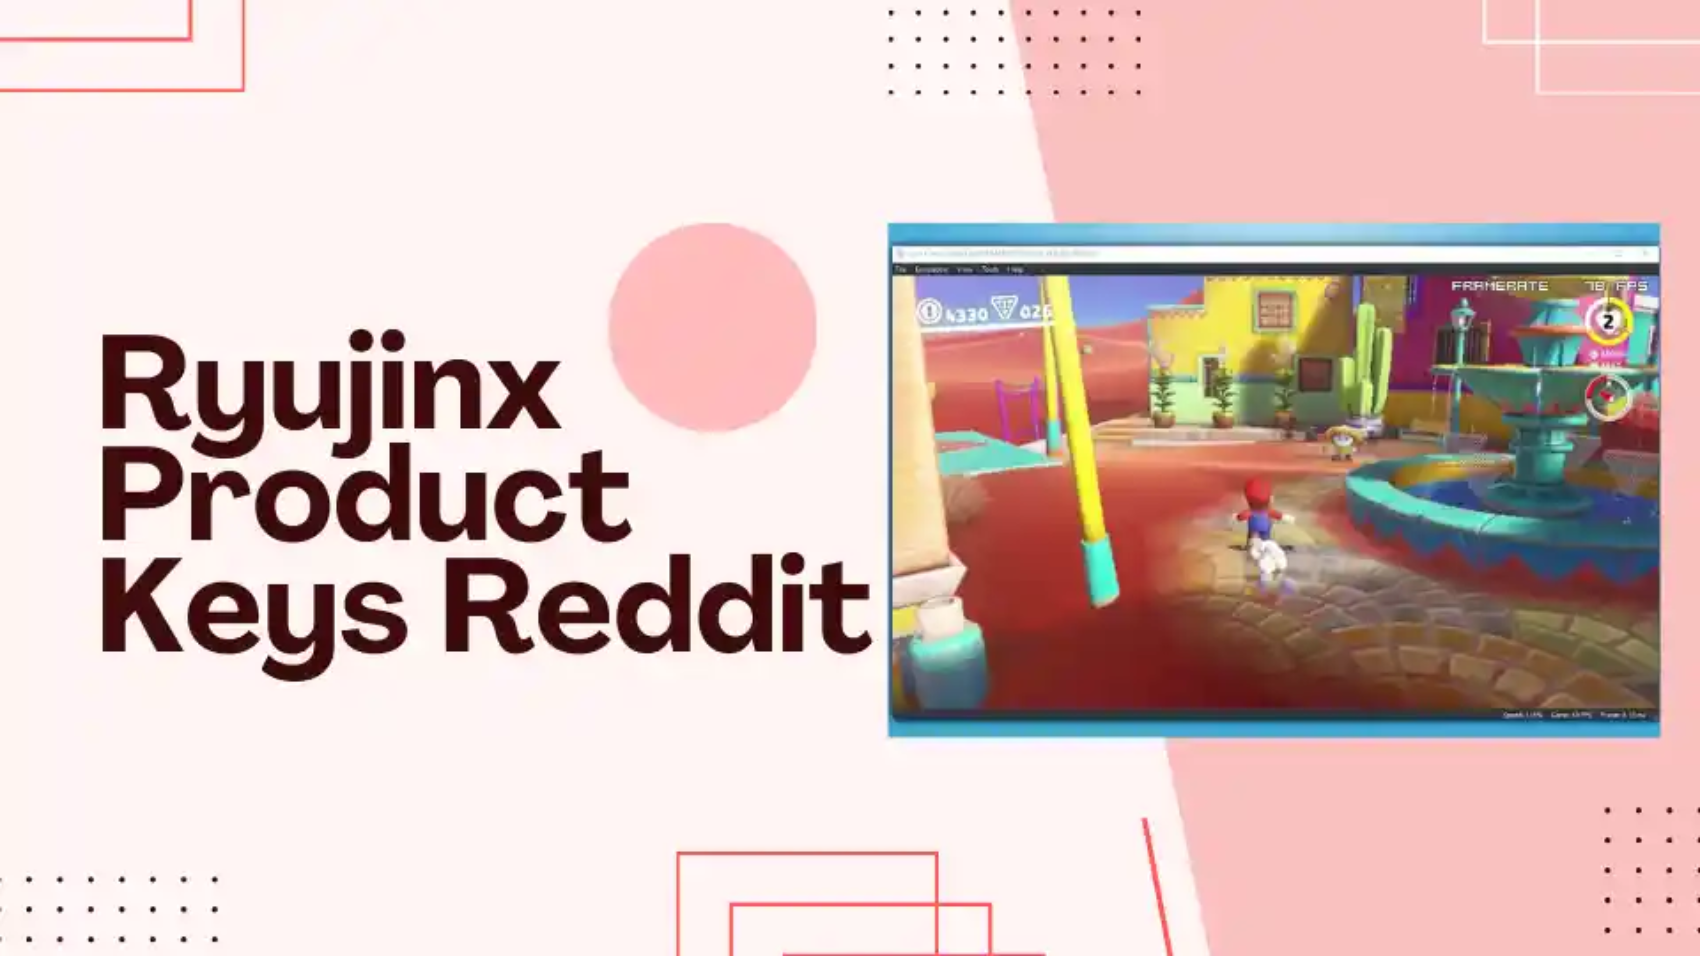 Ryujinx Product Keys Reddit